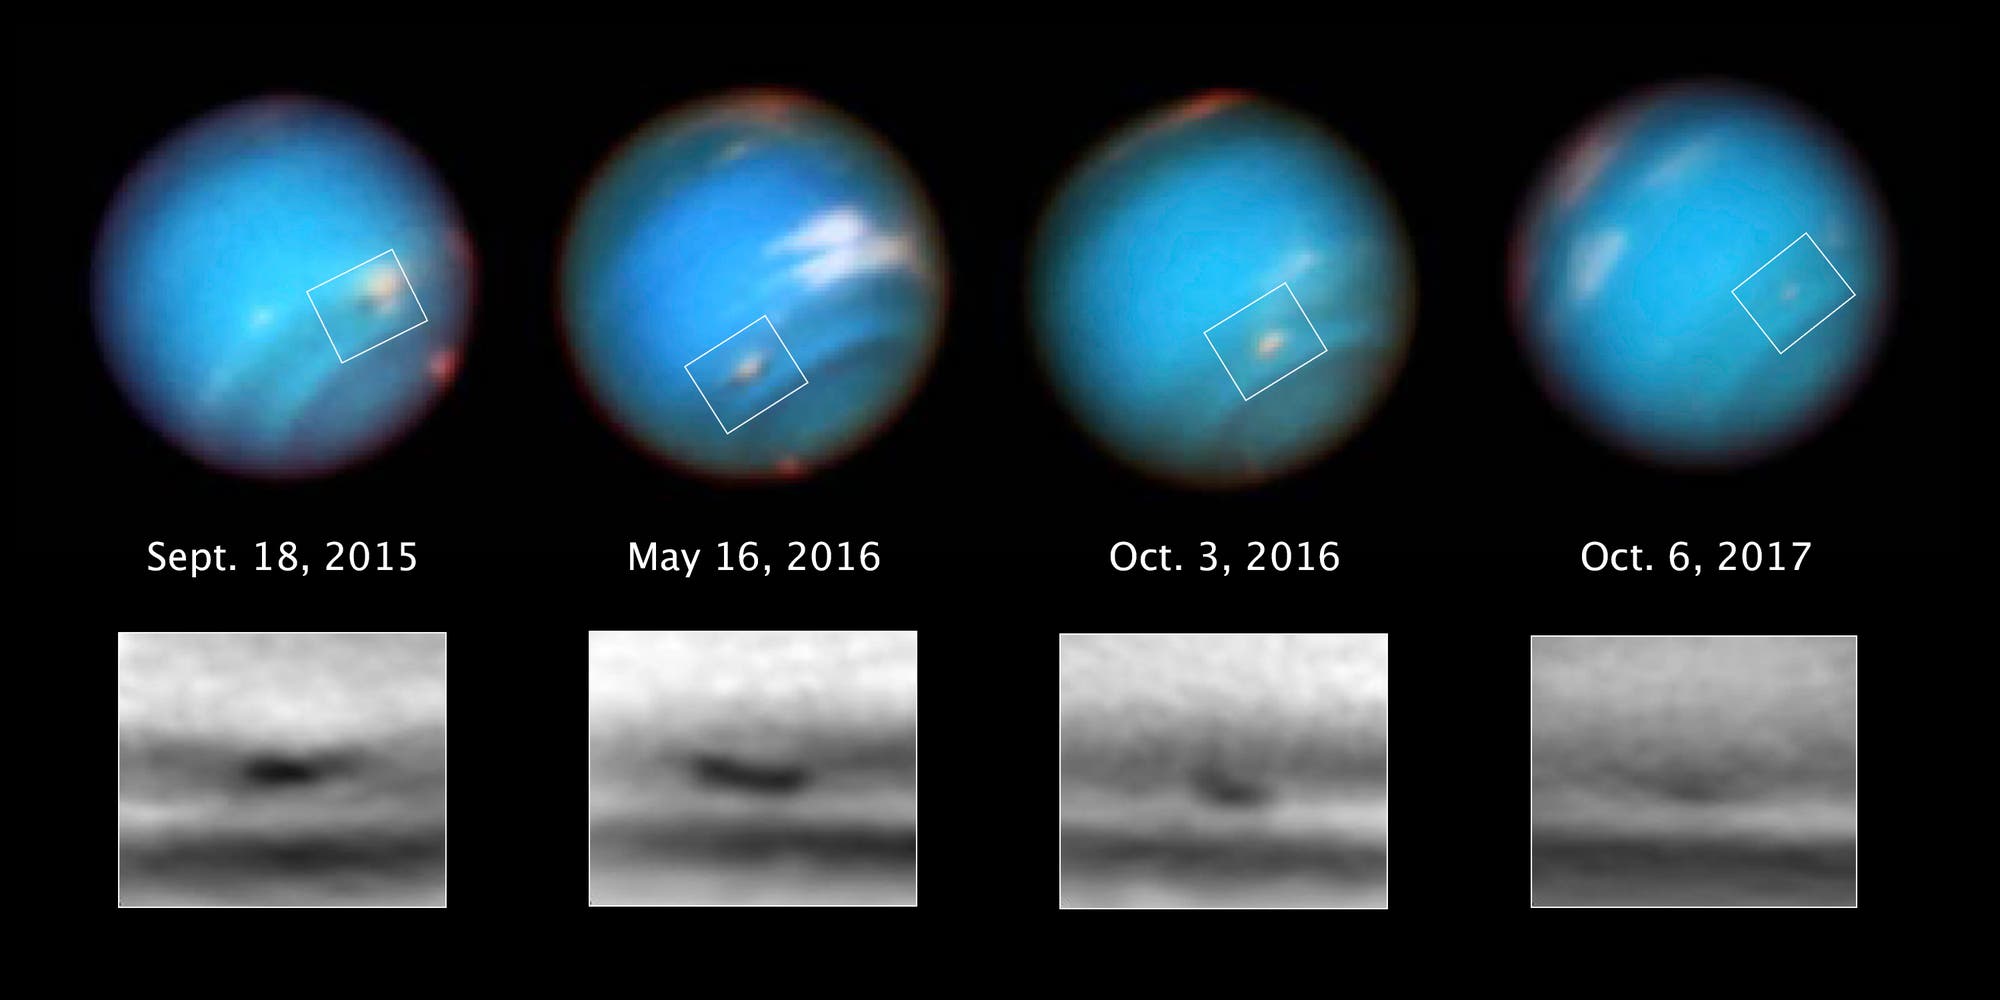 Entwicklung eines Wirbelsturms auf Neptun in den Jahren 2015 bis 2017 (Aufnahmen des Weltraumteleskops Hubble)